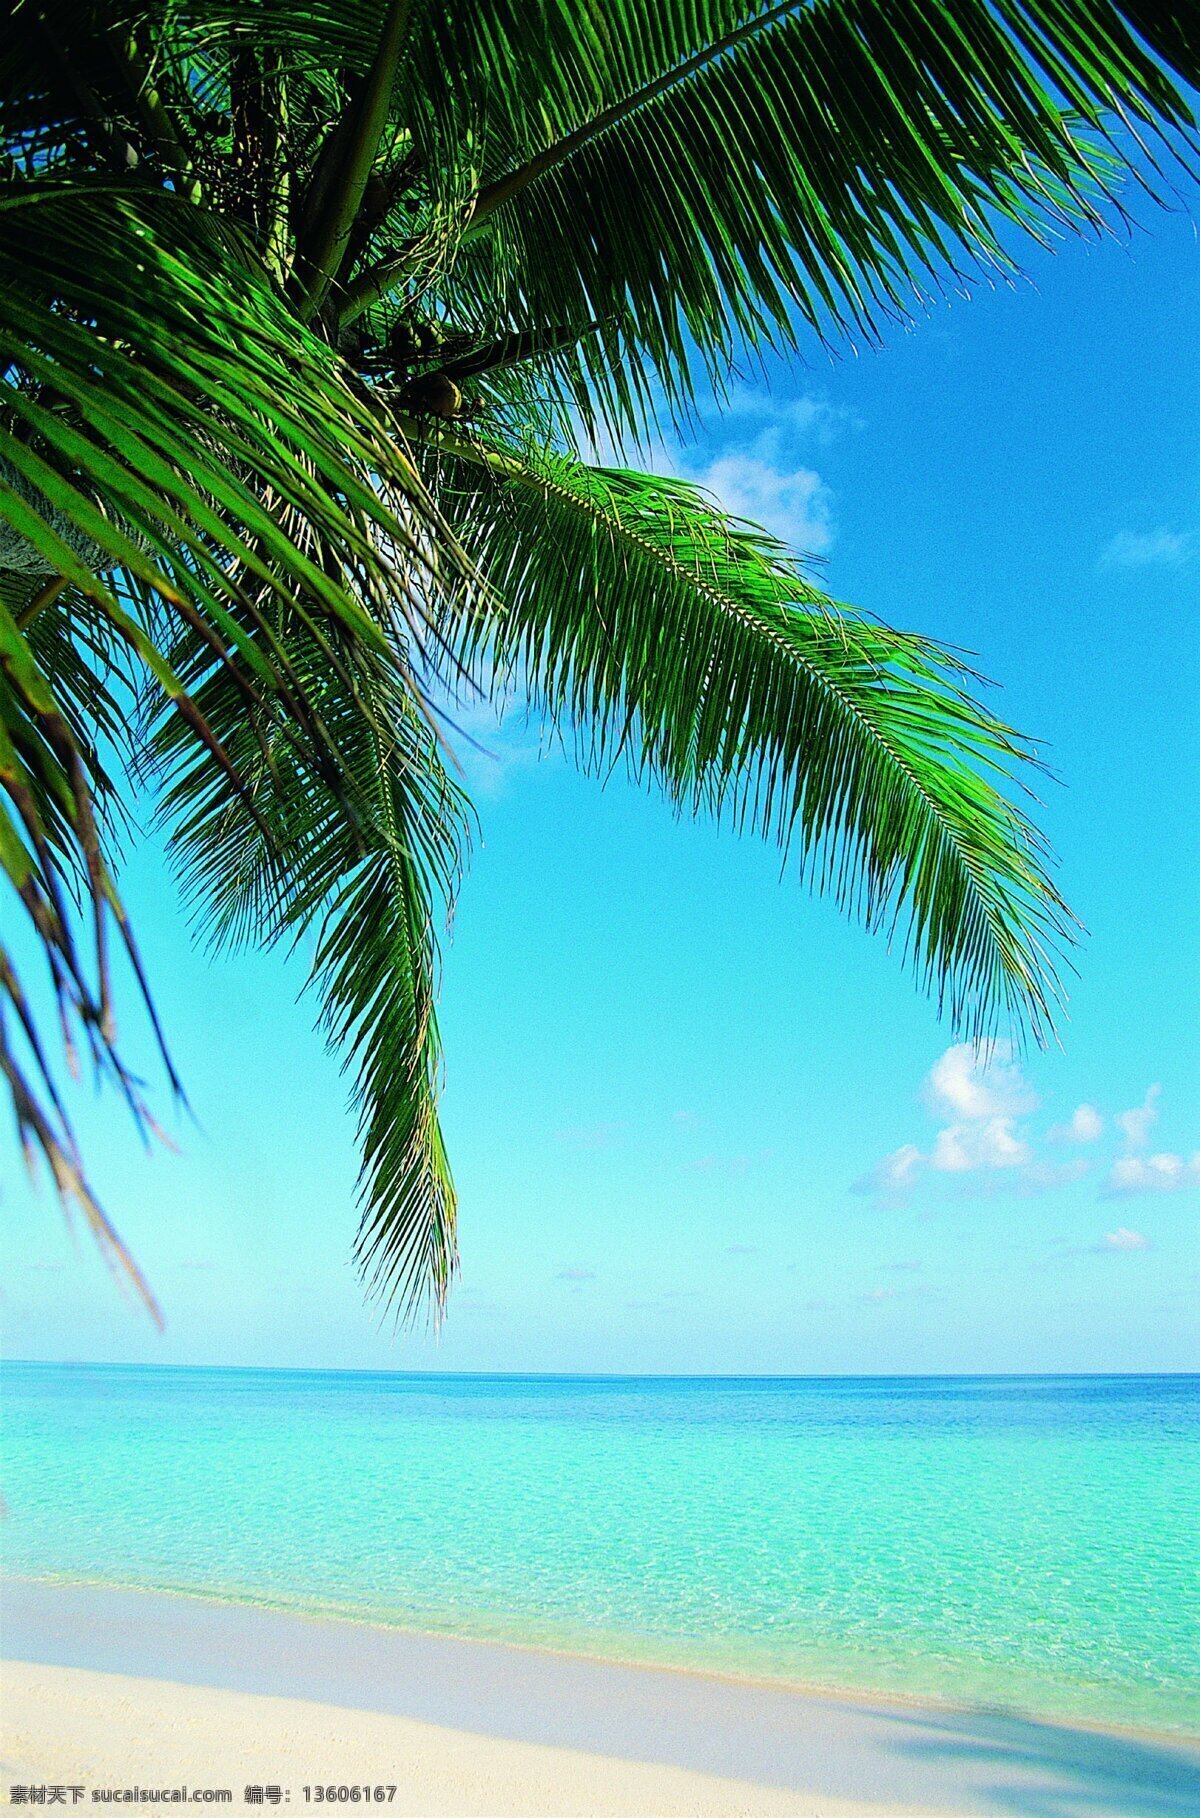 美丽 海边 风景图片 海岸线 海滩 沙滩 海岛 度假小屋 度假海滩 椰树林 椰林 海风 洁白的沙滩 度假沙滩 沙滩椅 海水 美丽的大海 蔚蓝的大海 海浪 浪花 美丽风景 风景线 自然风景 山水 田园 自然景观